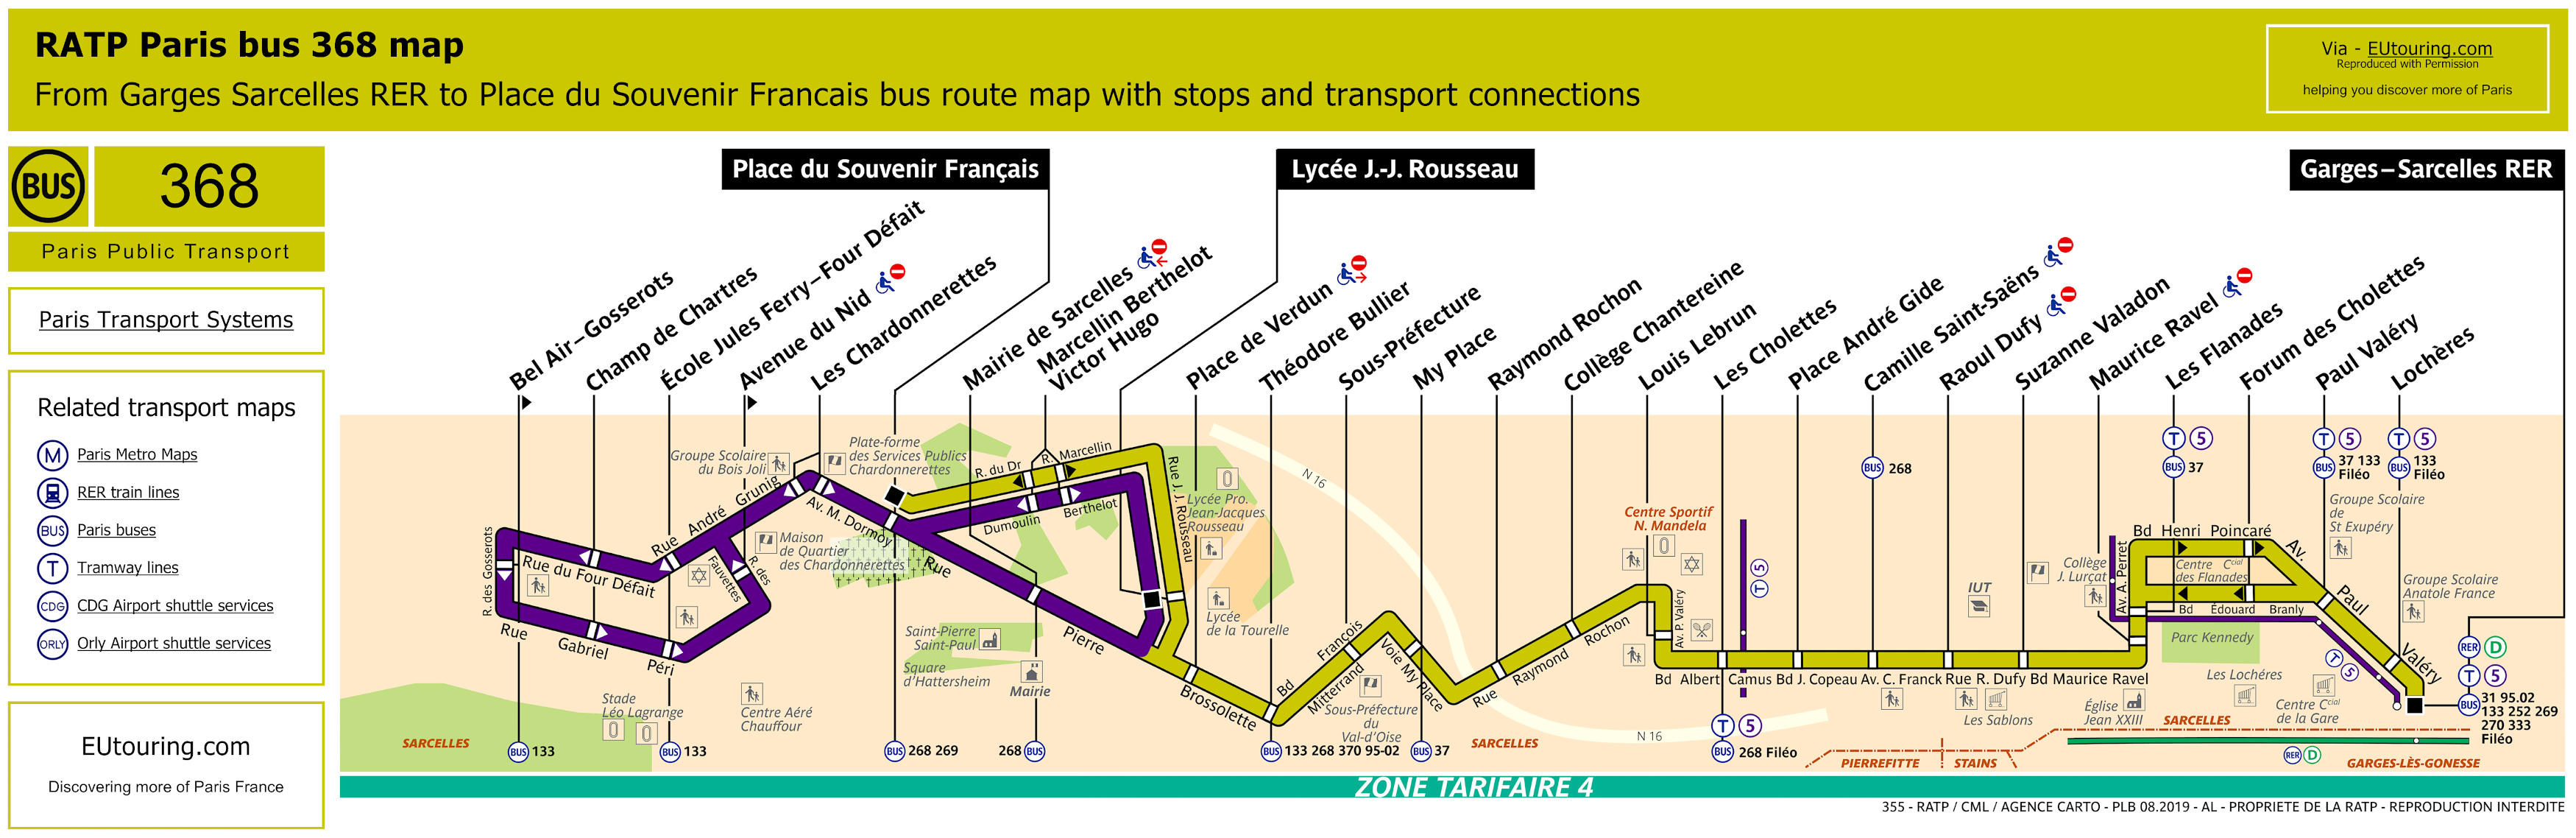 RATP Bus Line 368 map - Image.